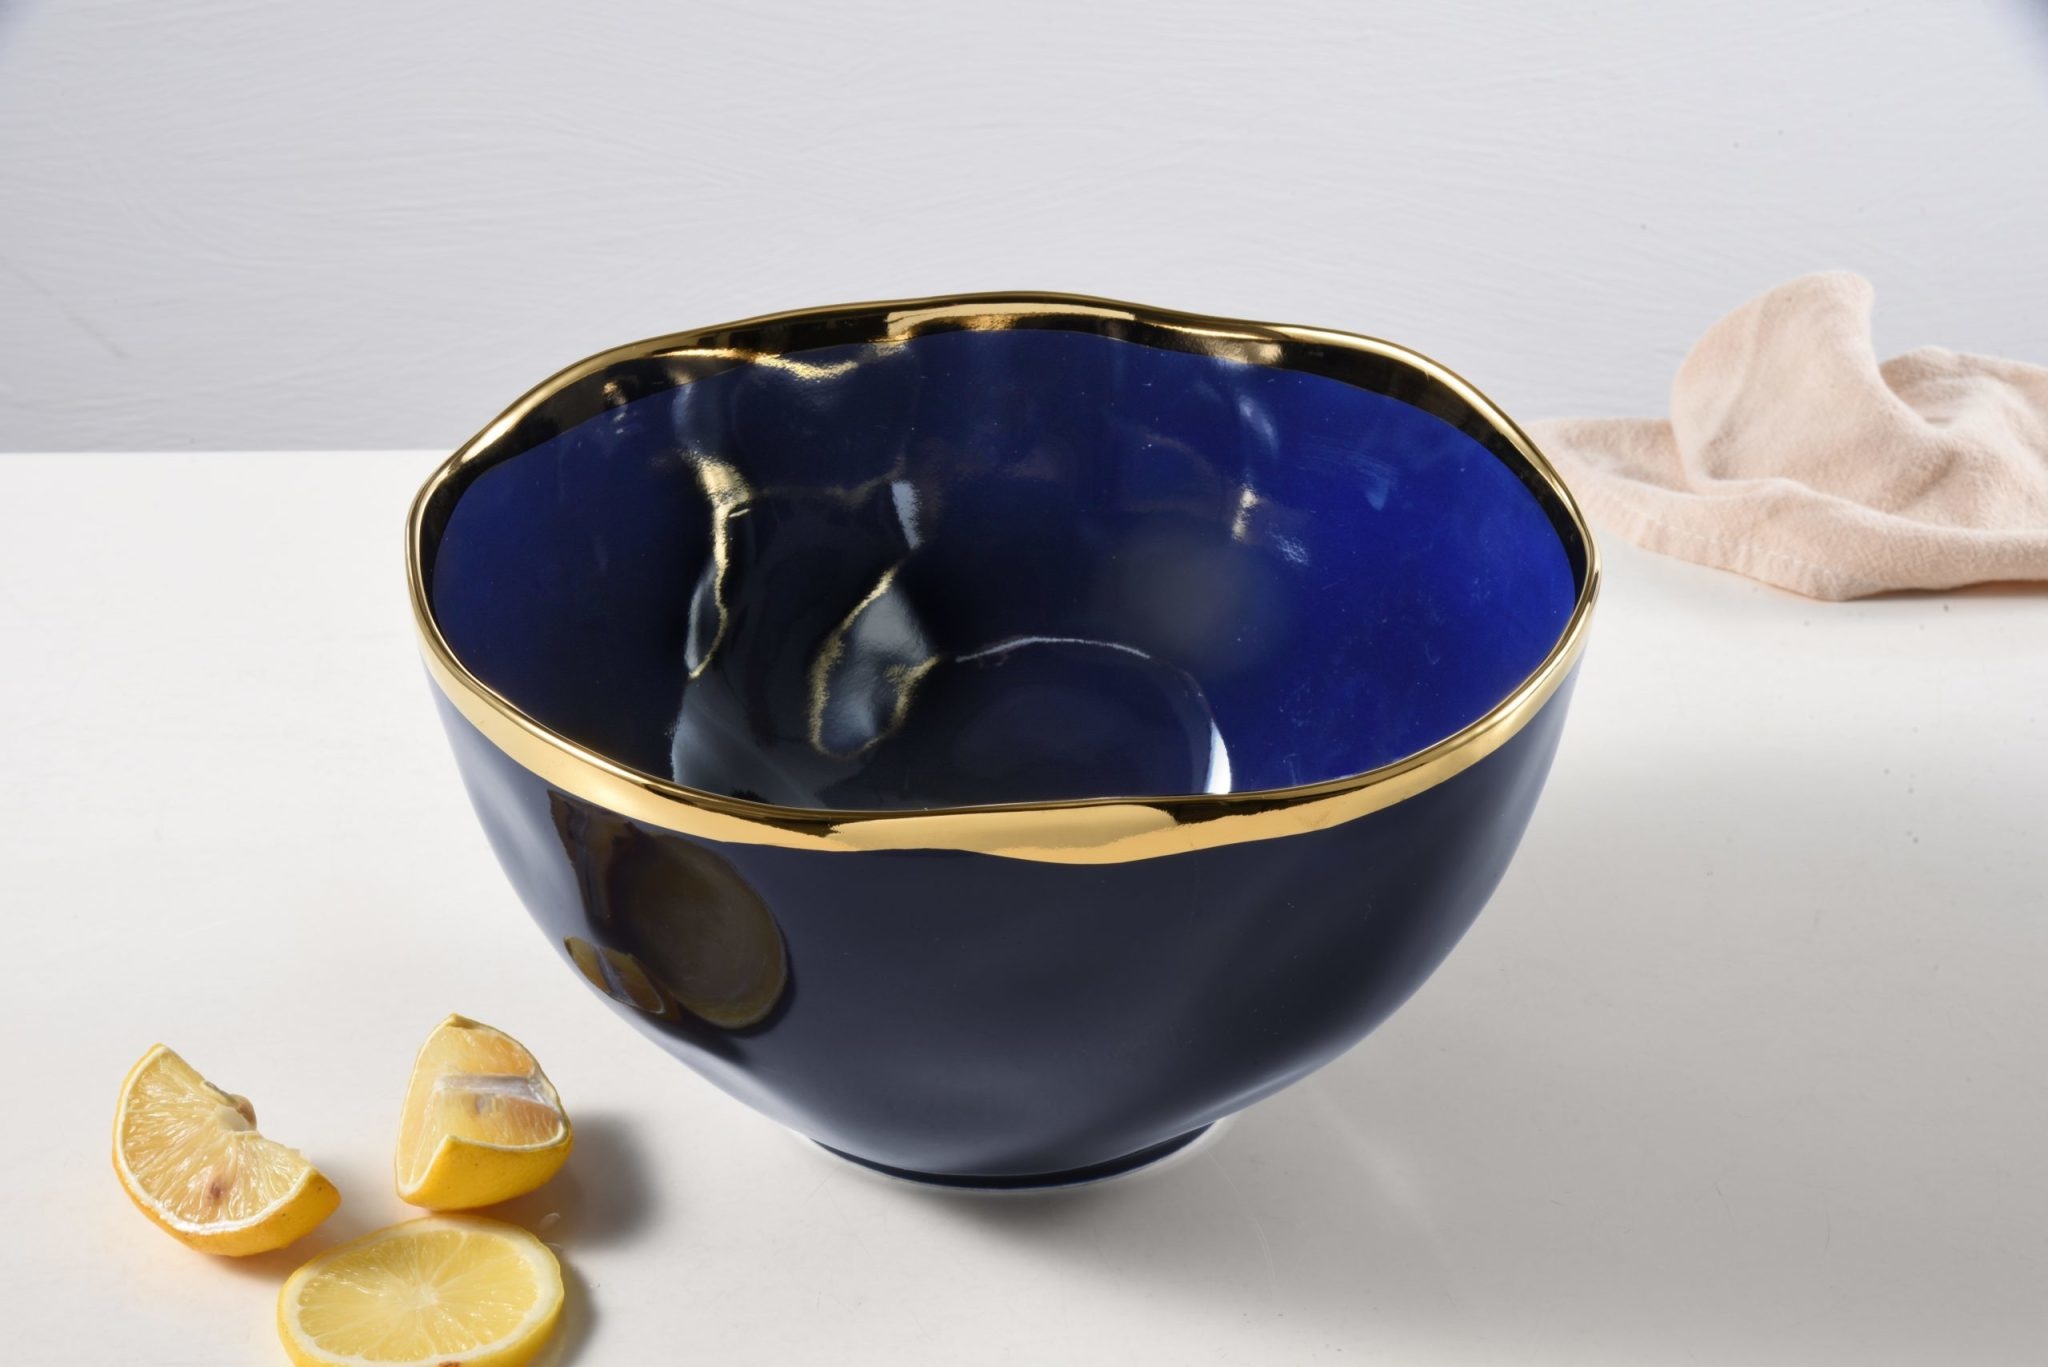 Blue Extra Large Bowl